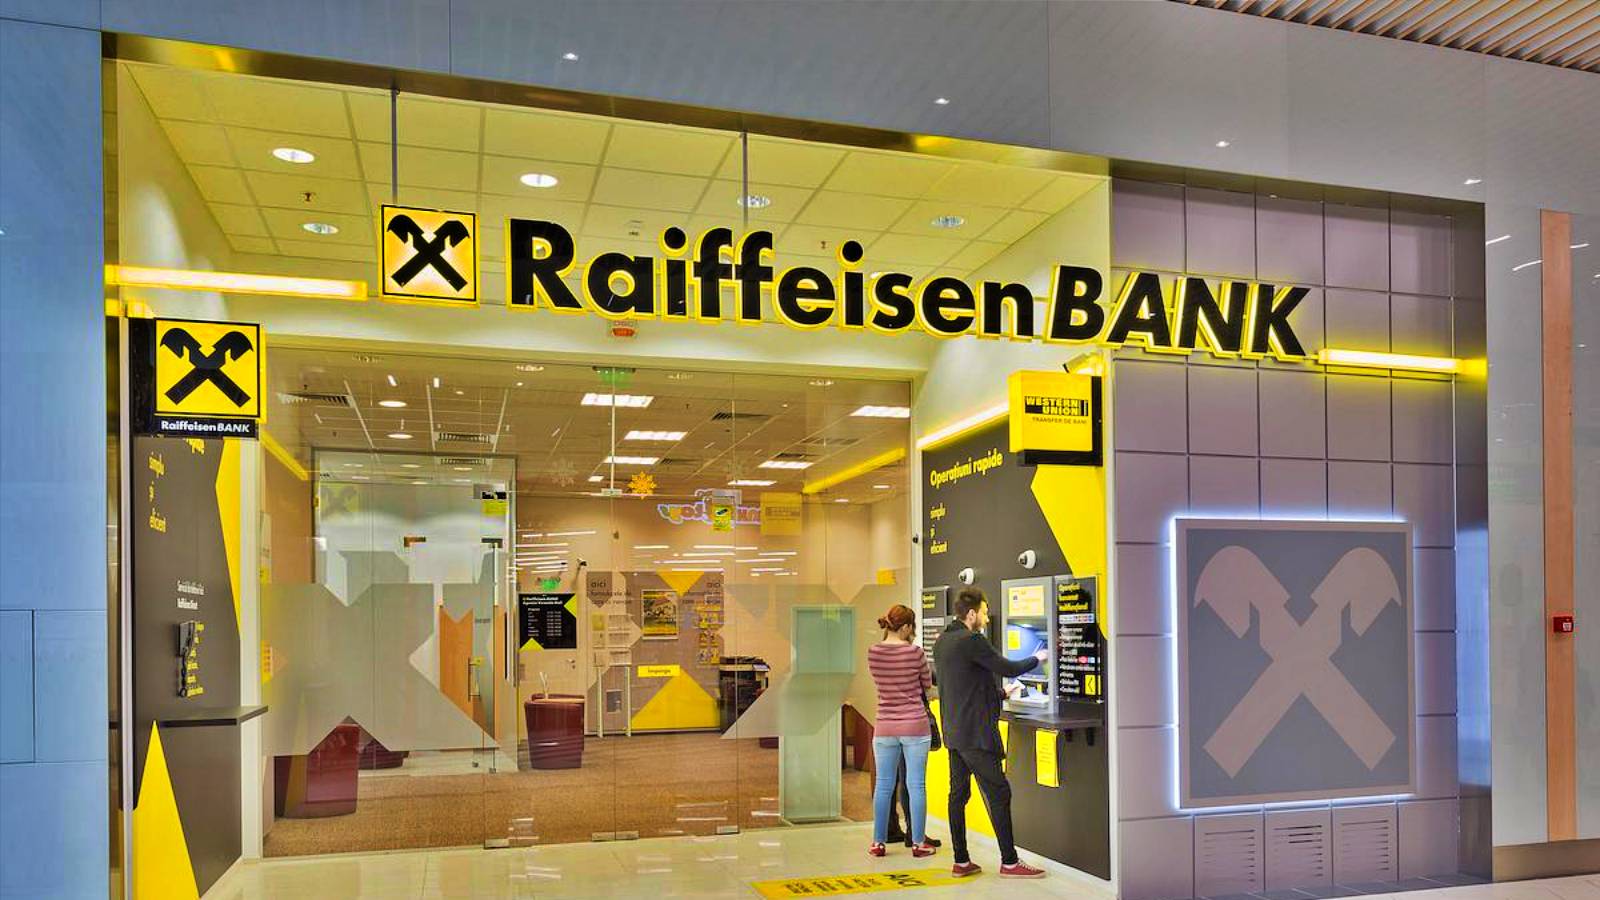 Raiffeisen Bank GRATIS officiellt meddelande för rumänska kunder